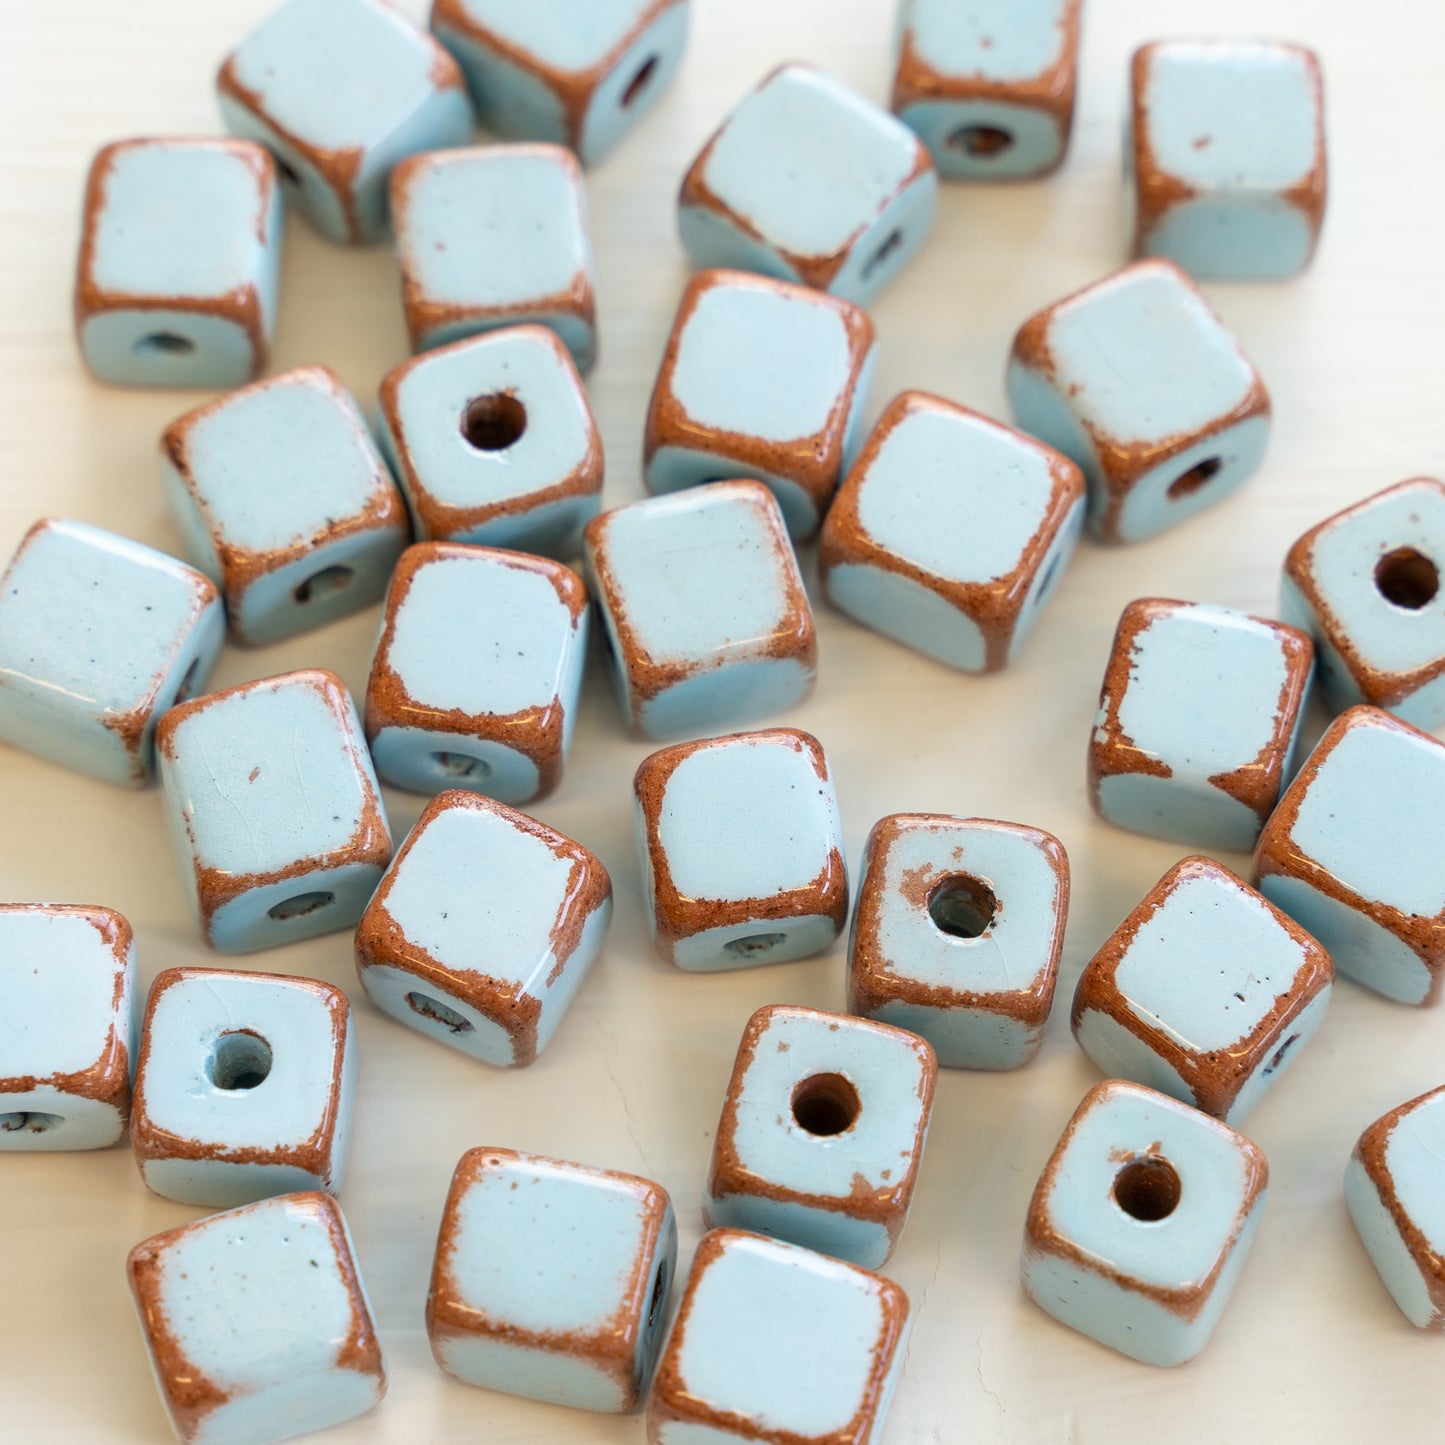 9mm Shiny Glazed Ceramic Cube Beads - Baby Blue